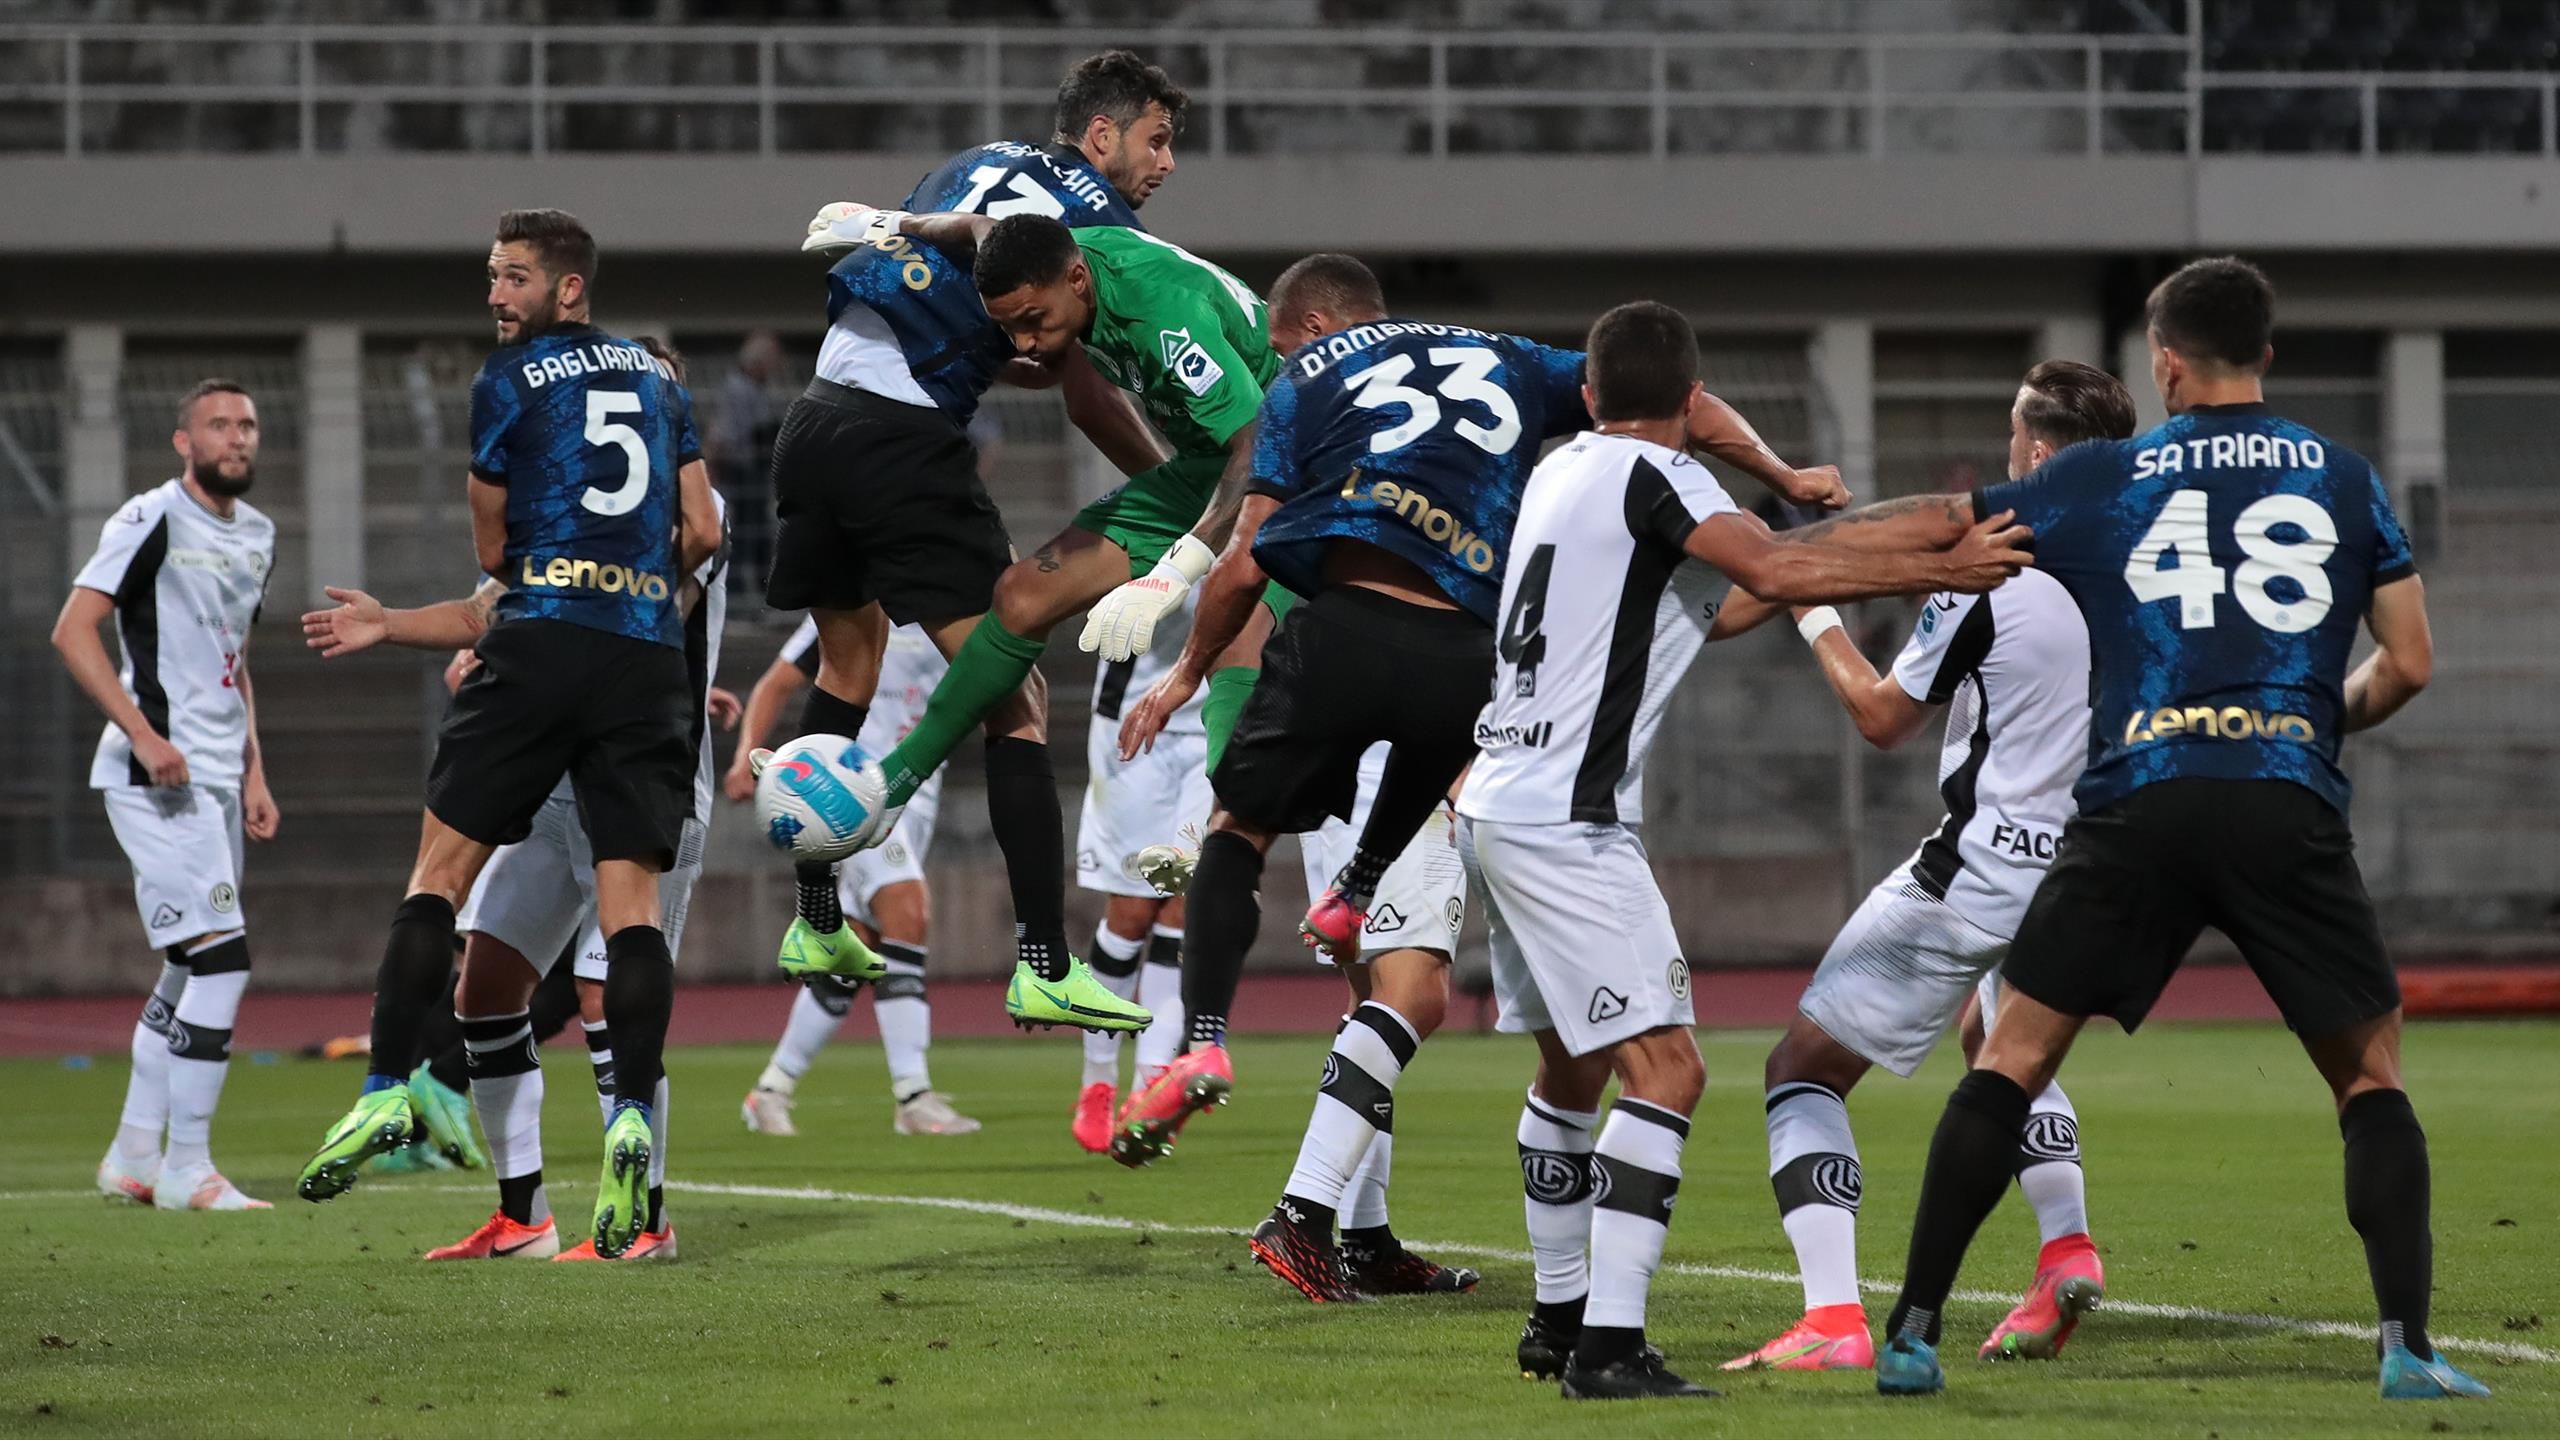 Calcio, Lugano-Inter 5-6 d.c.r: esordio promettente per Inzaghi, brillano  Dimarco e Satriano - Eurosport